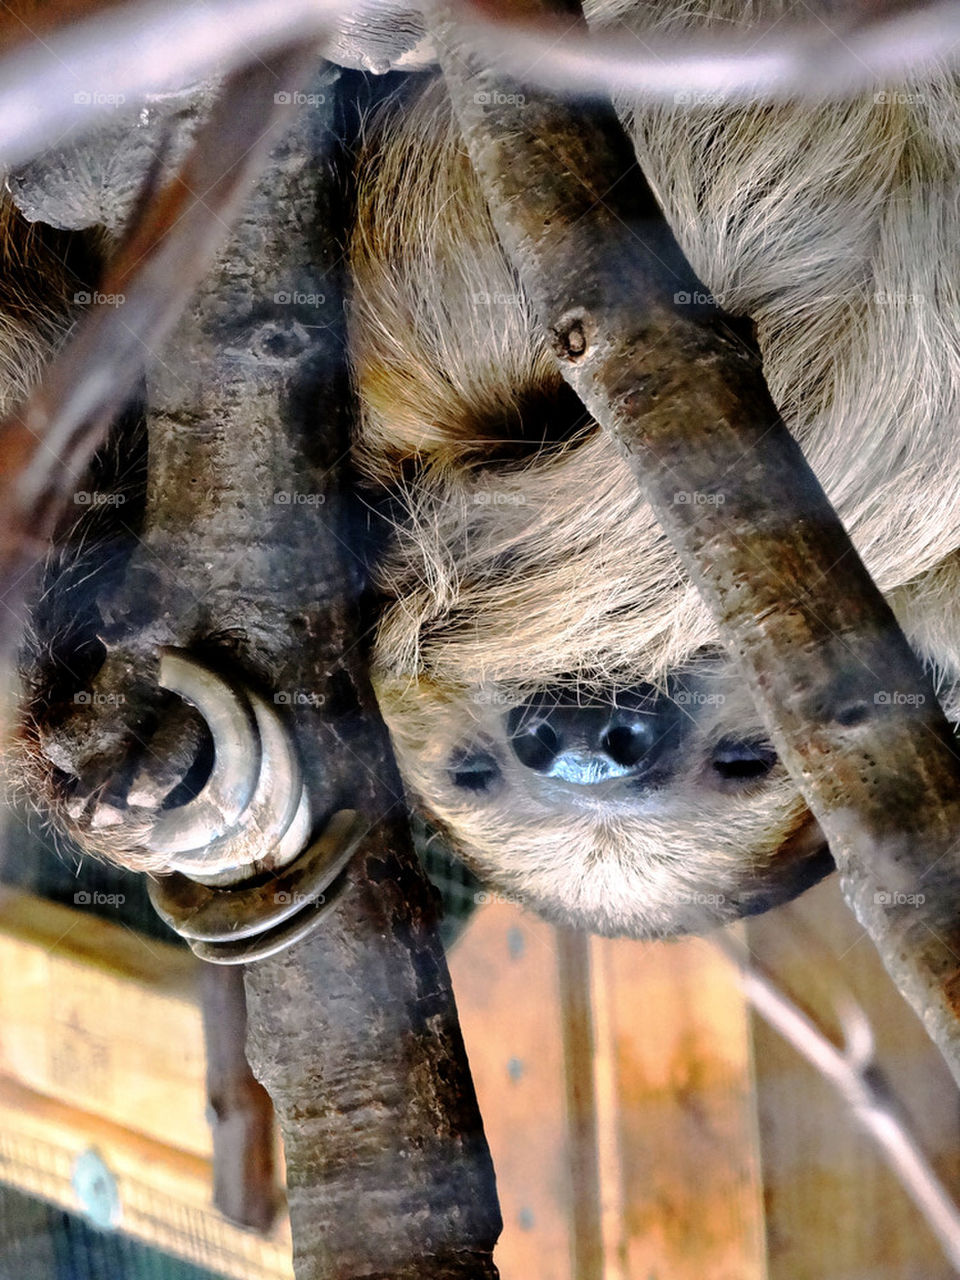 sleepy sloth